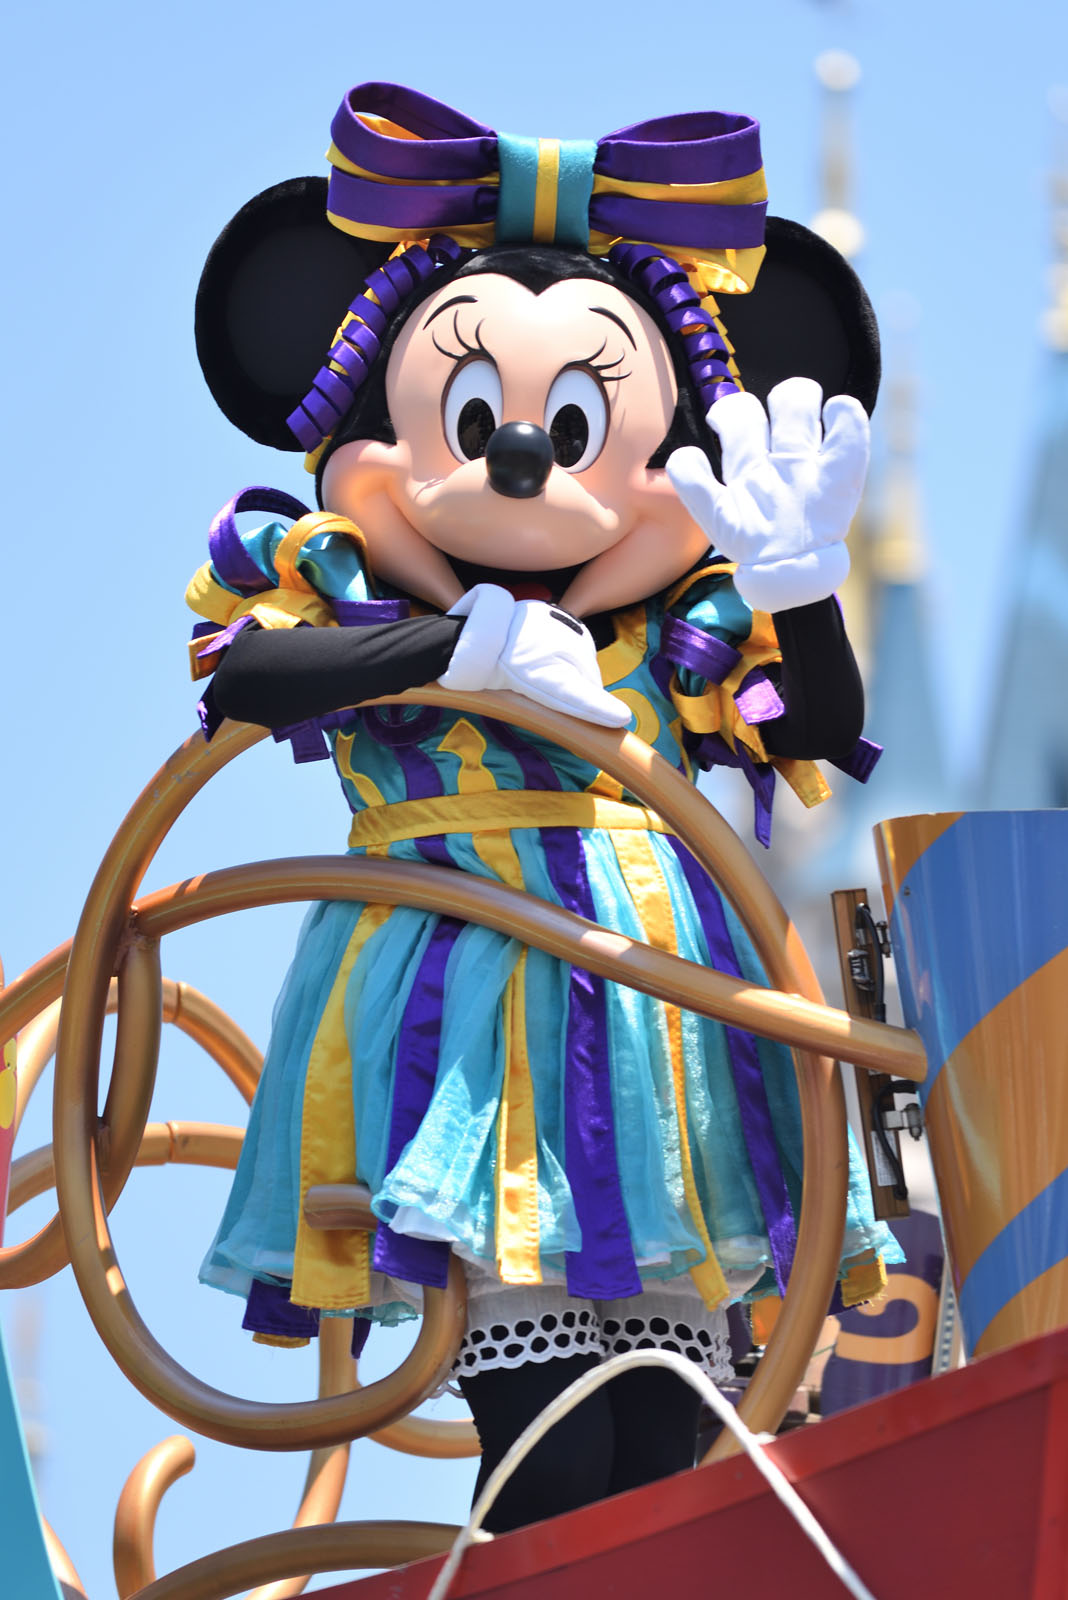 ミッキー ミニーがニューフェイス 新しい顔に Tds Tip Top イースター コスチューム公開 Disney Colors Blog